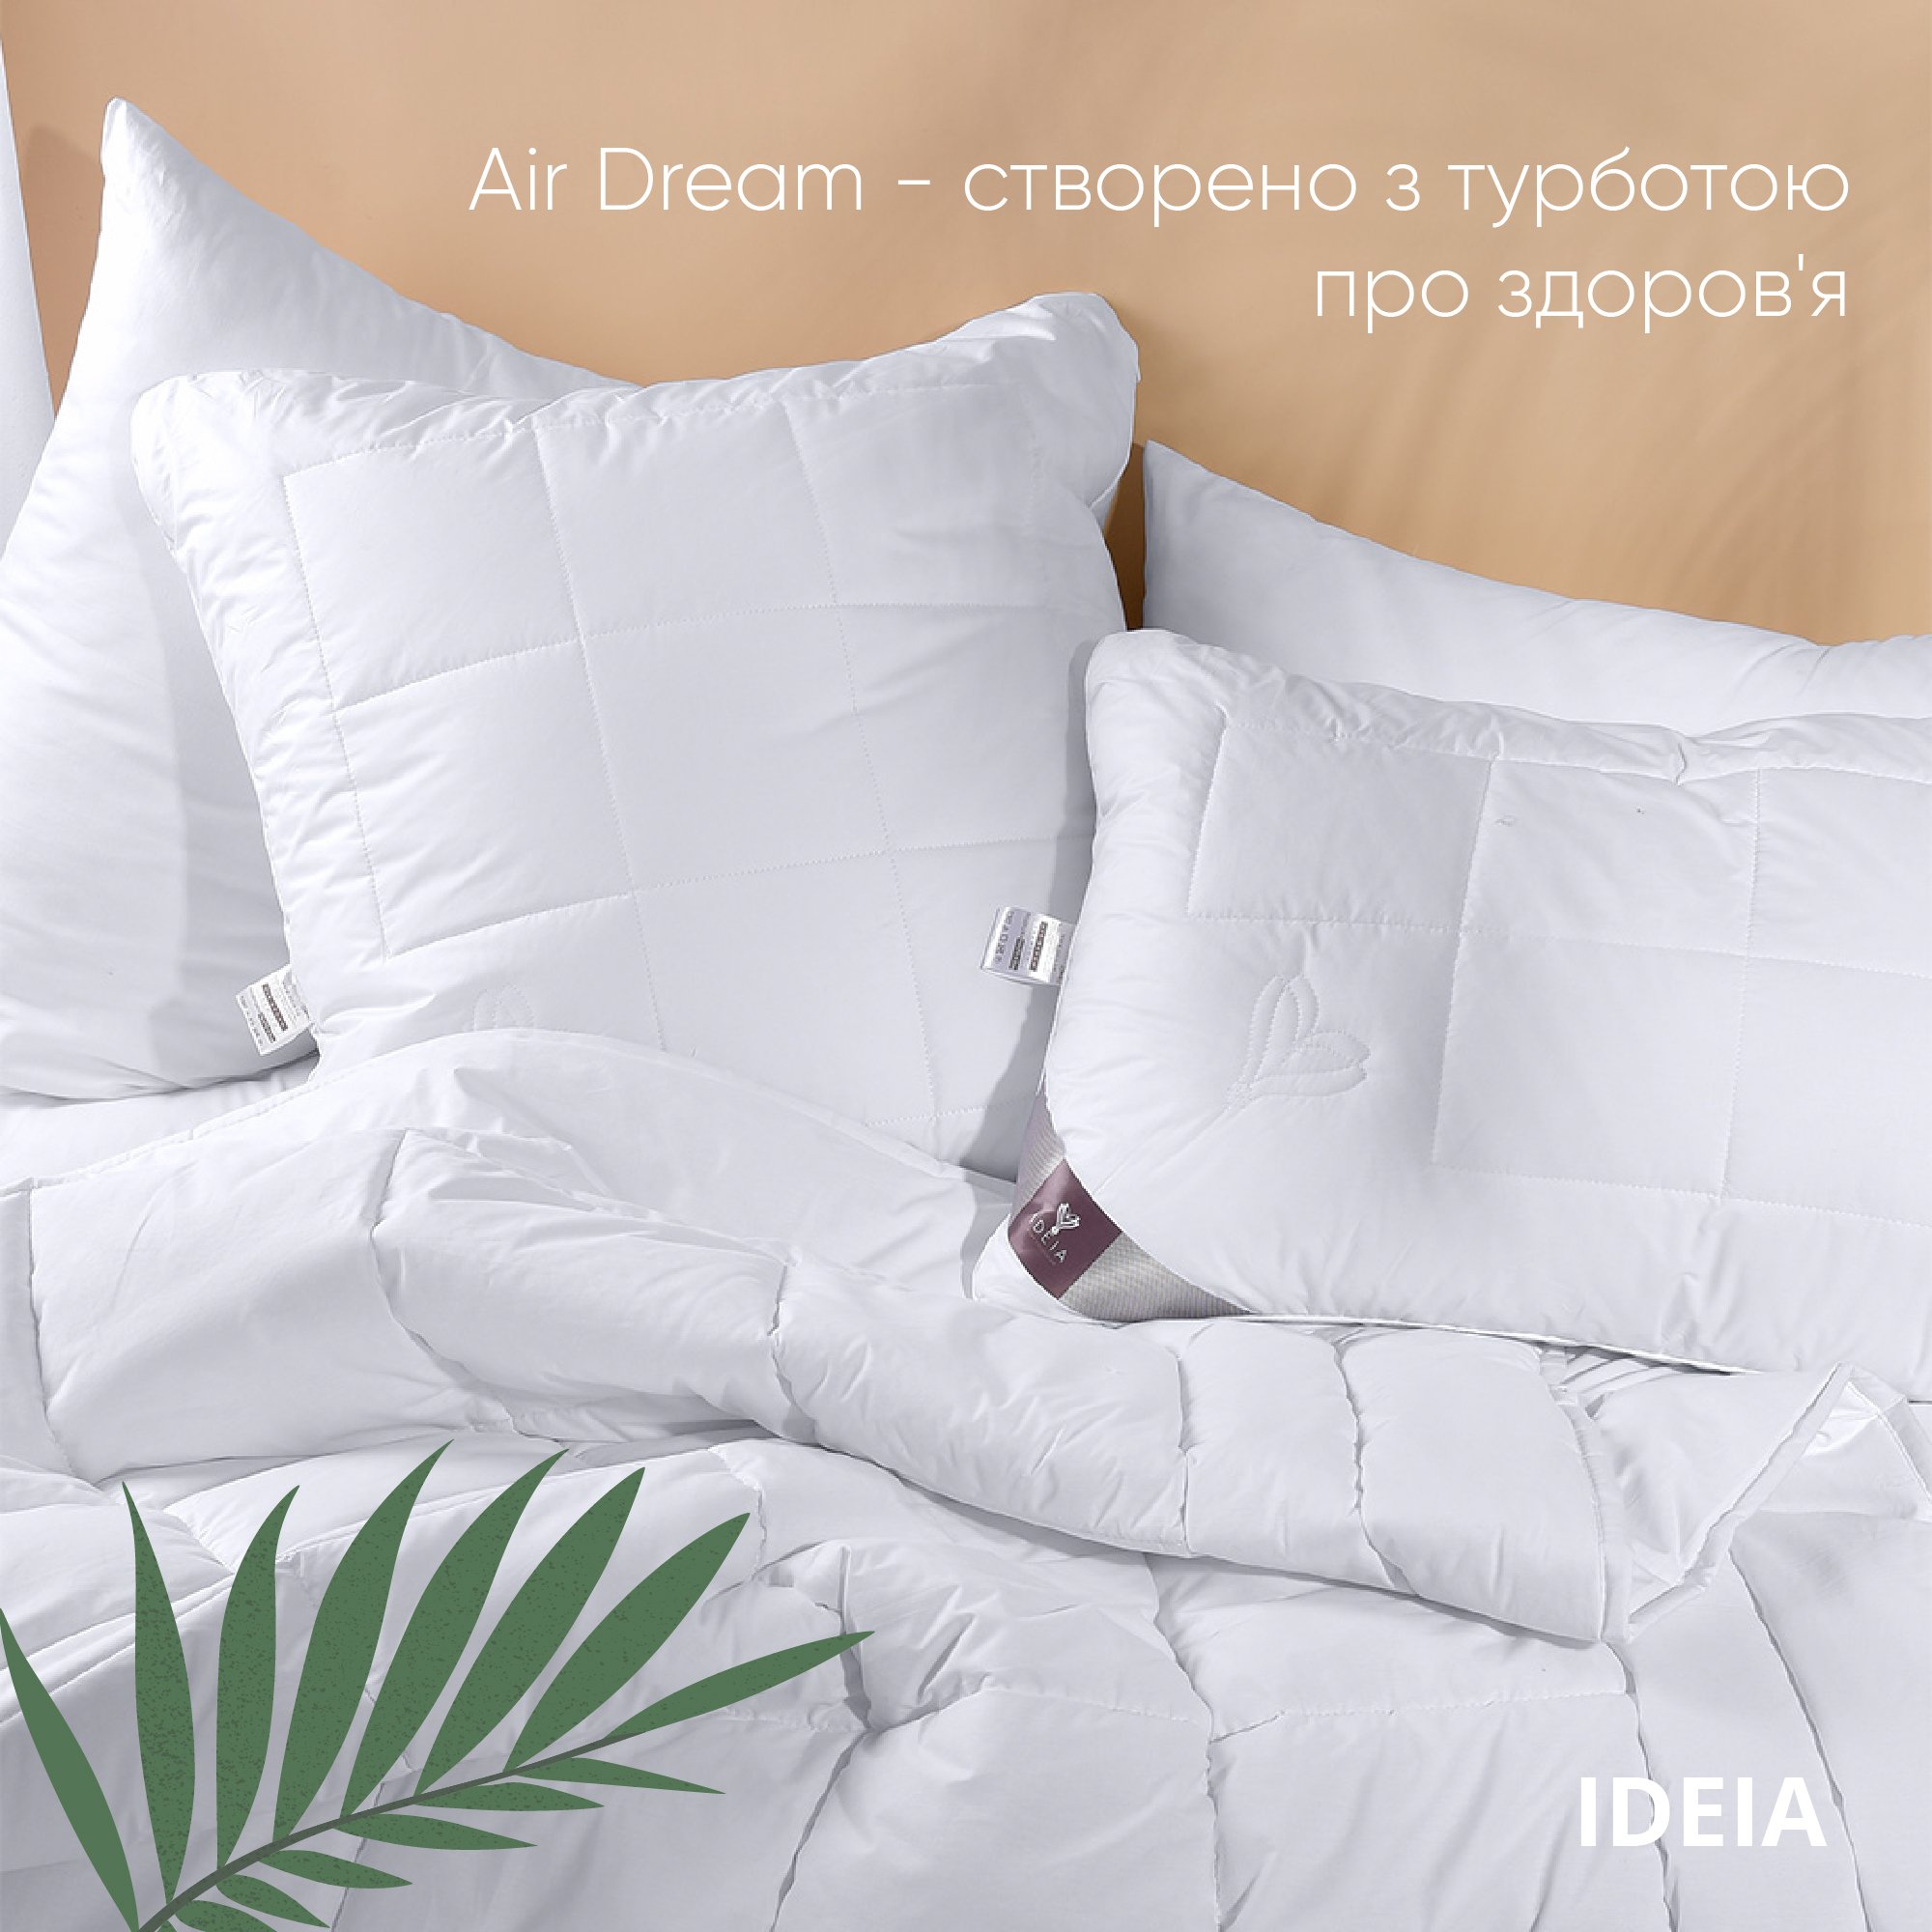 Ковдра Ideia Air Dream Premium літня, 210х140, білий (8-11693) - фото 5